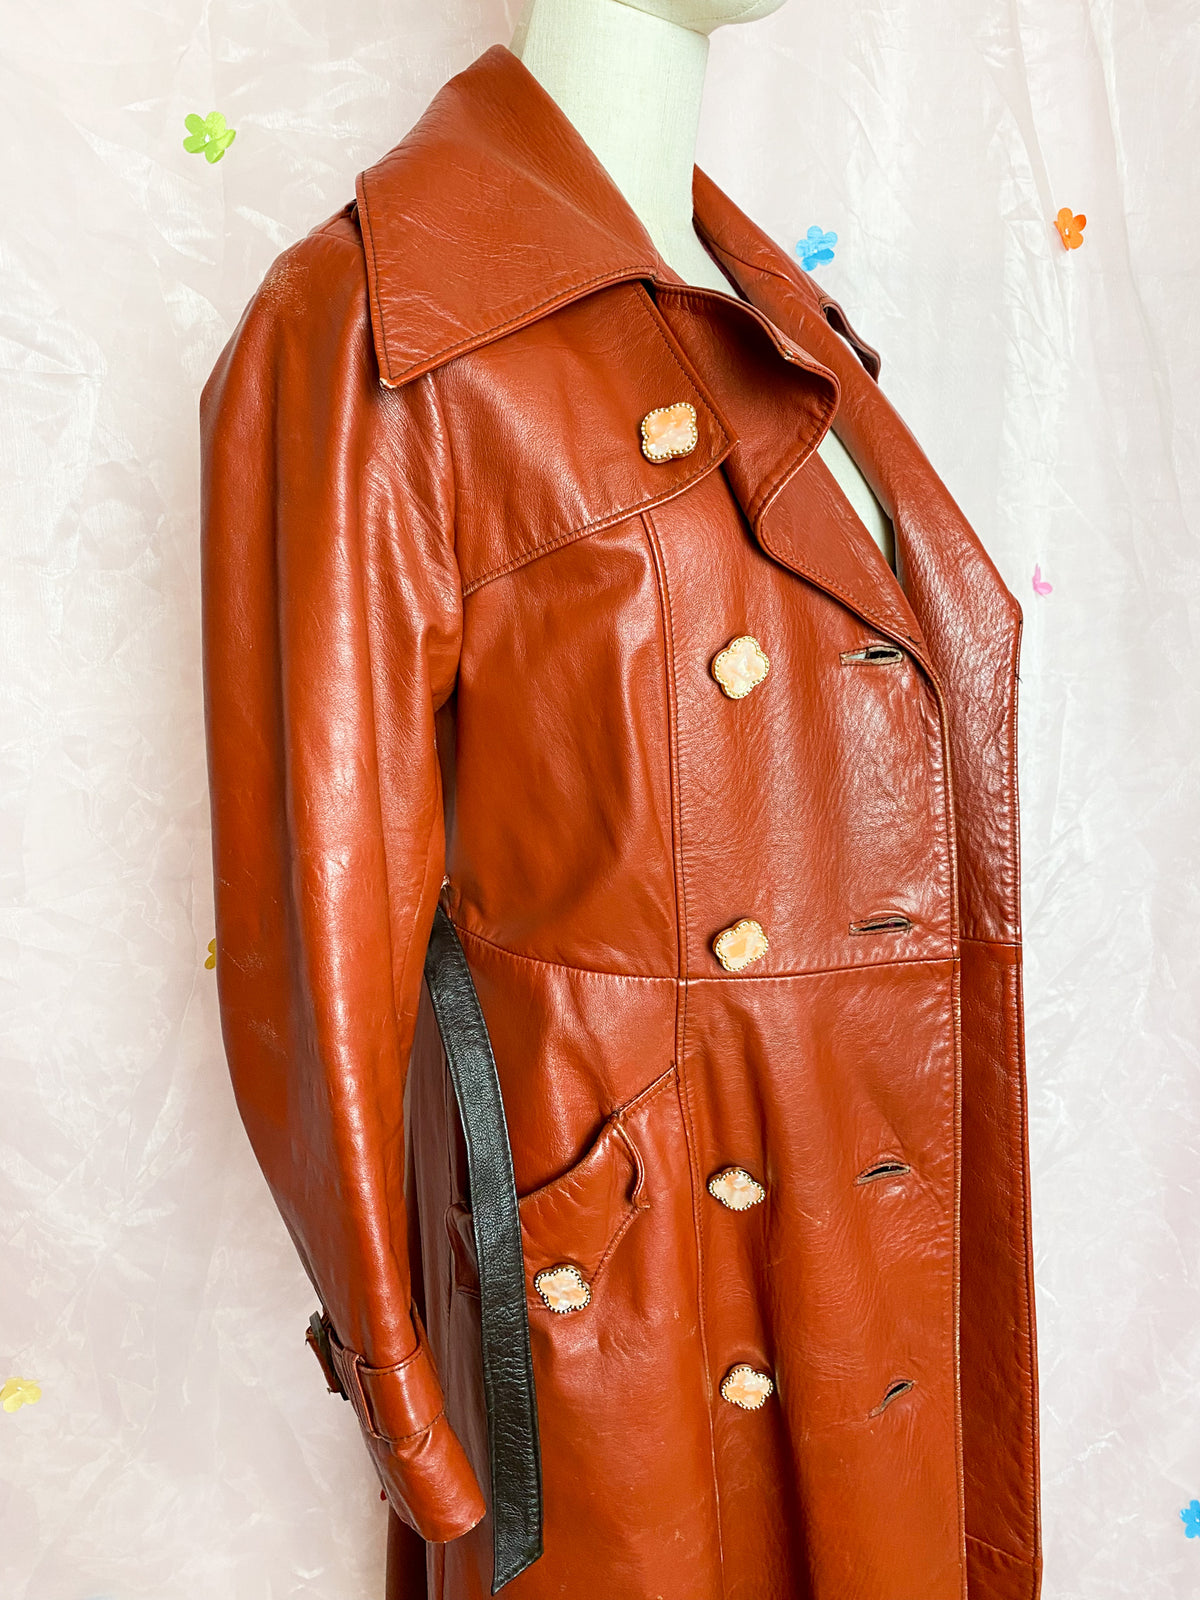 my 60 ties dream leather coat